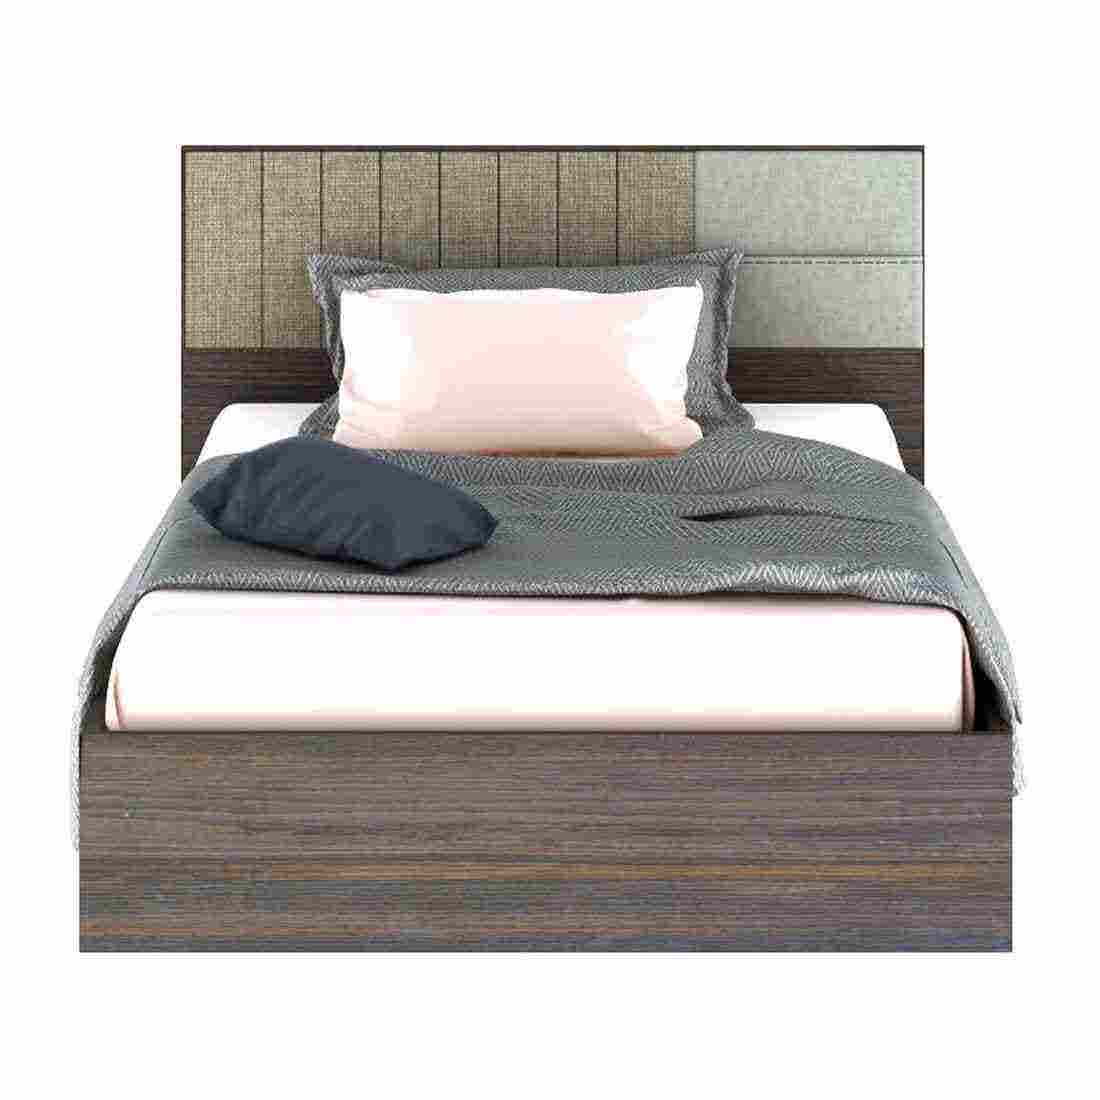 ชุดห้องนอน เตียง รุ่น Econi สีสีเข้มลายไม้ธรรมชาติ-SB Design Square